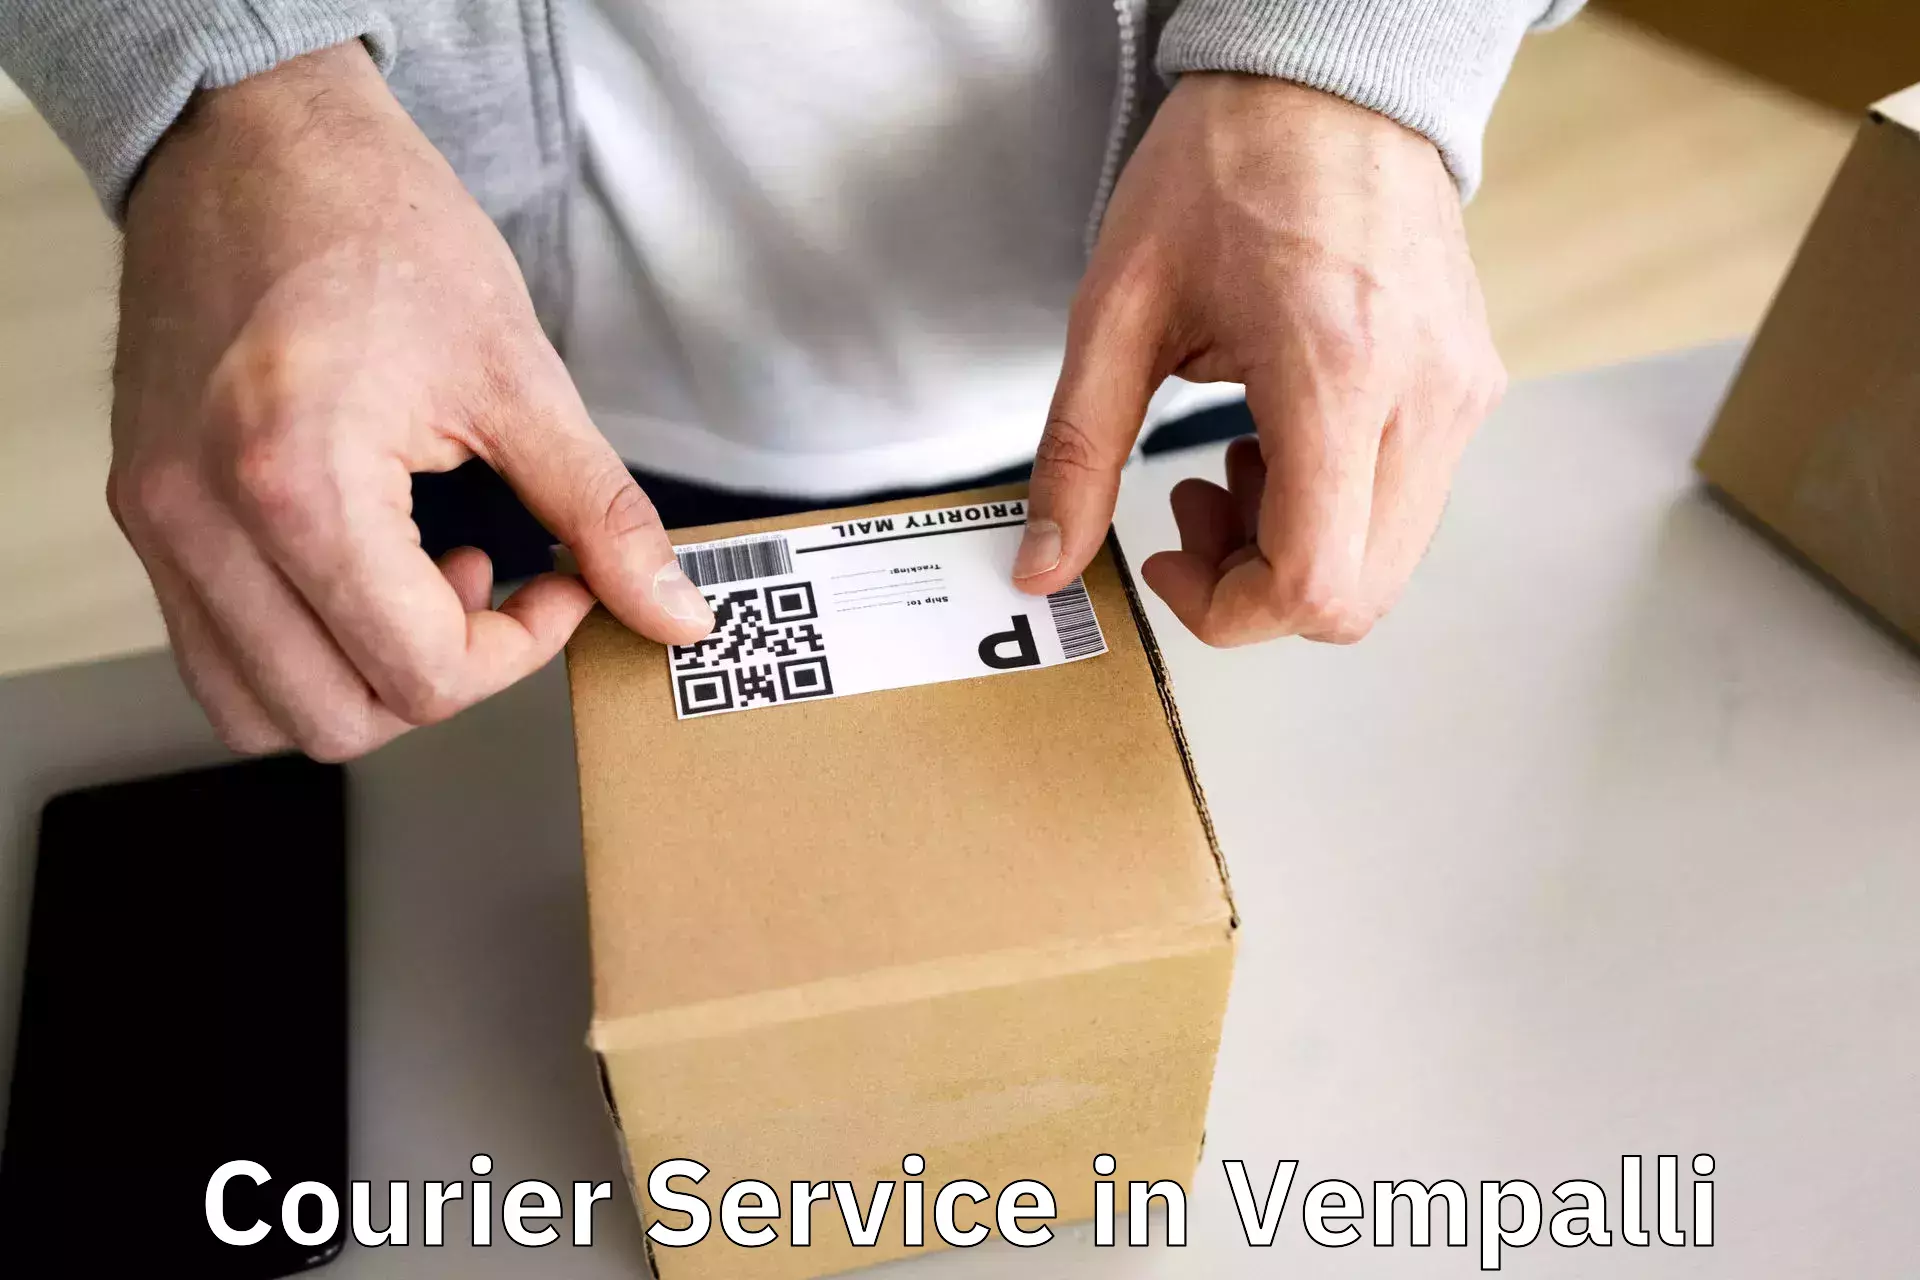 Remote area delivery in Vempalli